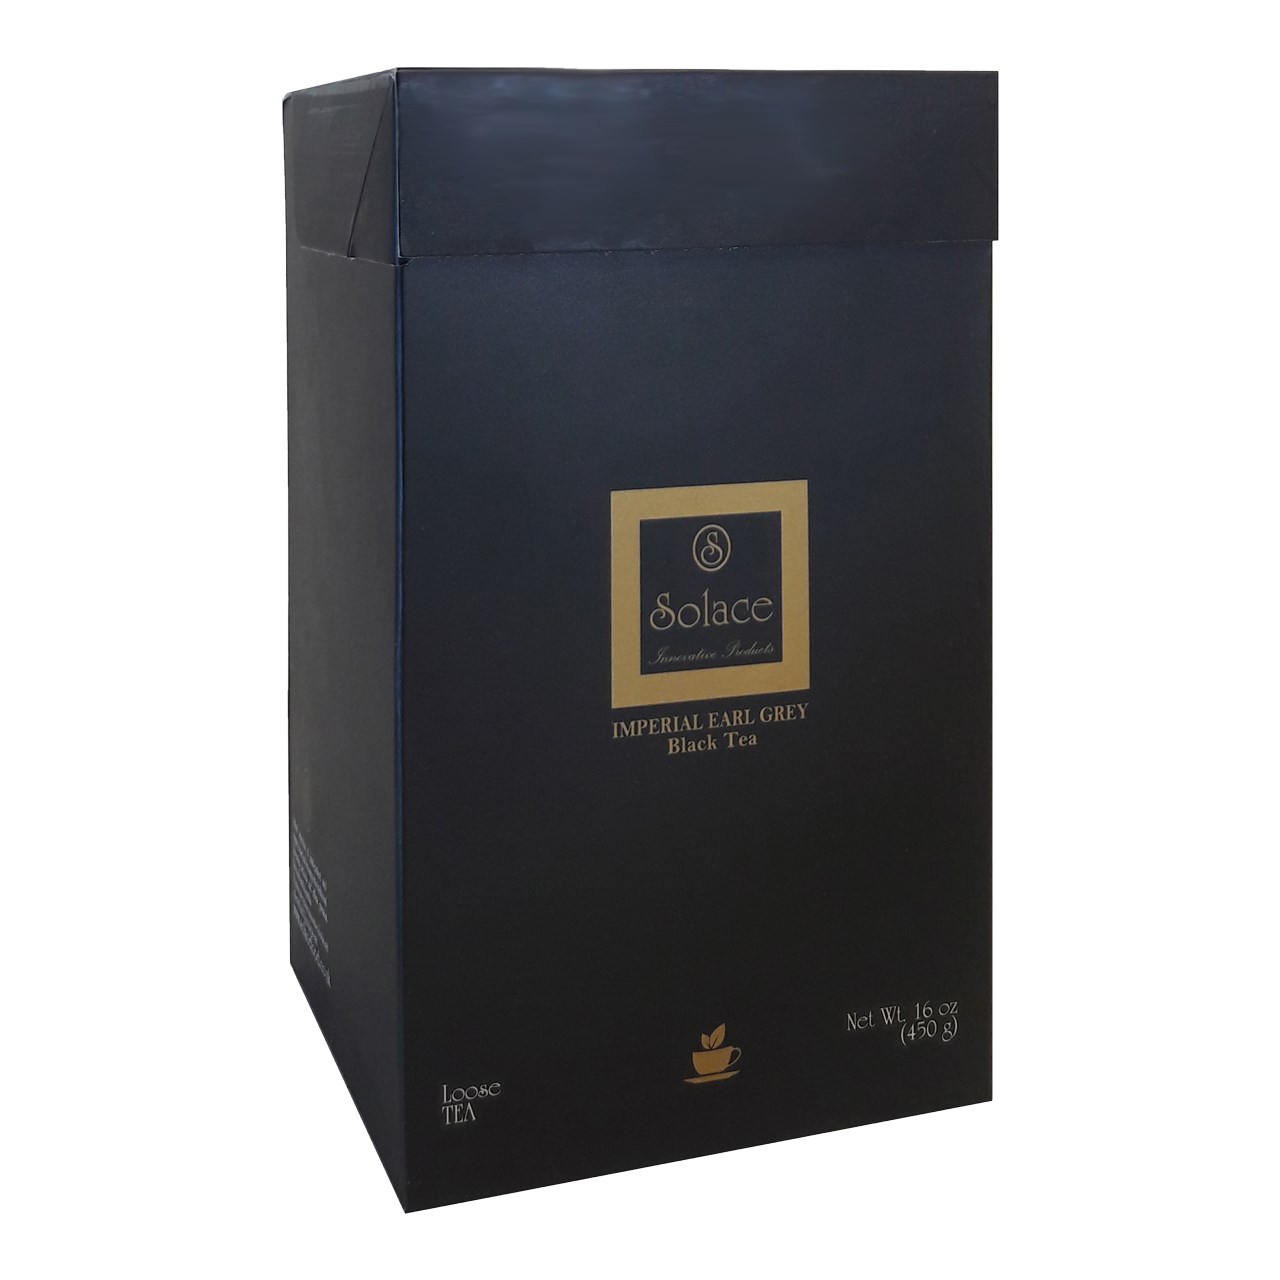 بسته چای سیاه سولیس مدل امپریال ارلگری 450 گرمی